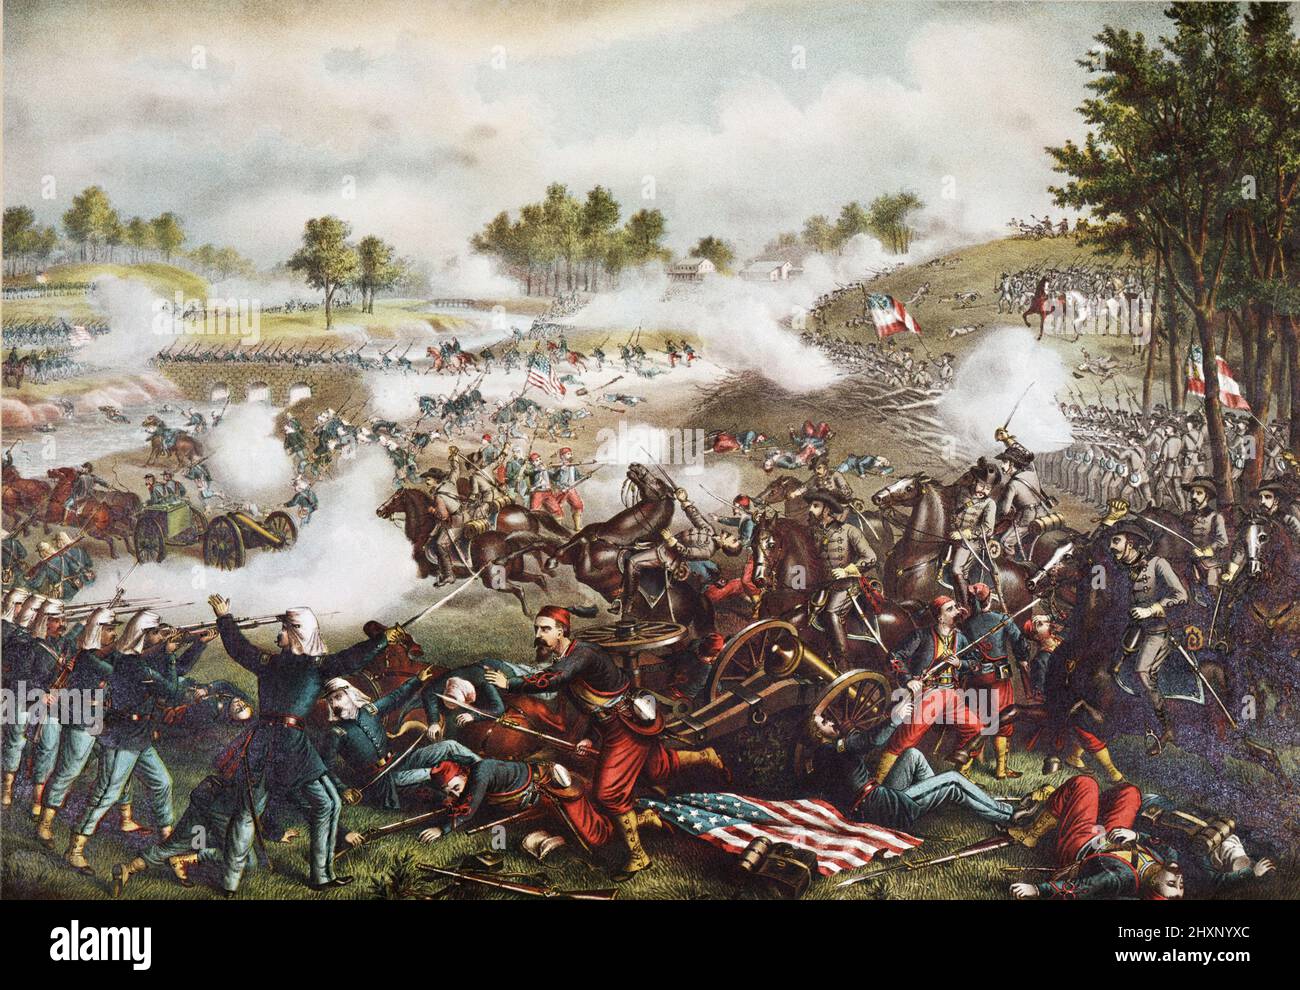 Prima battaglia di Bull Run cromolithograph di Kurz & Allison la prima battaglia di Bull Run (il nome usato dalle forze dell'Unione), conosciuta anche come la battaglia di First Manassas (il nome usato dalle forze confederate), è stata la prima battaglia principale della guerra civile americana. La battaglia fu combattuta il 21 luglio 1861, nella Contea di Prince William, Virginia, appena a nord della città di Manassas e circa 30 miglia a ovest-sud-ovest di Washington, D.C. le forze dell'Unione furono lente nel posizionarsi, permettendo ai rinforzi confederati di arrivare in treno. Ogni lato aveva circa 18.000 troo mal addestrati e mal guidati Foto Stock